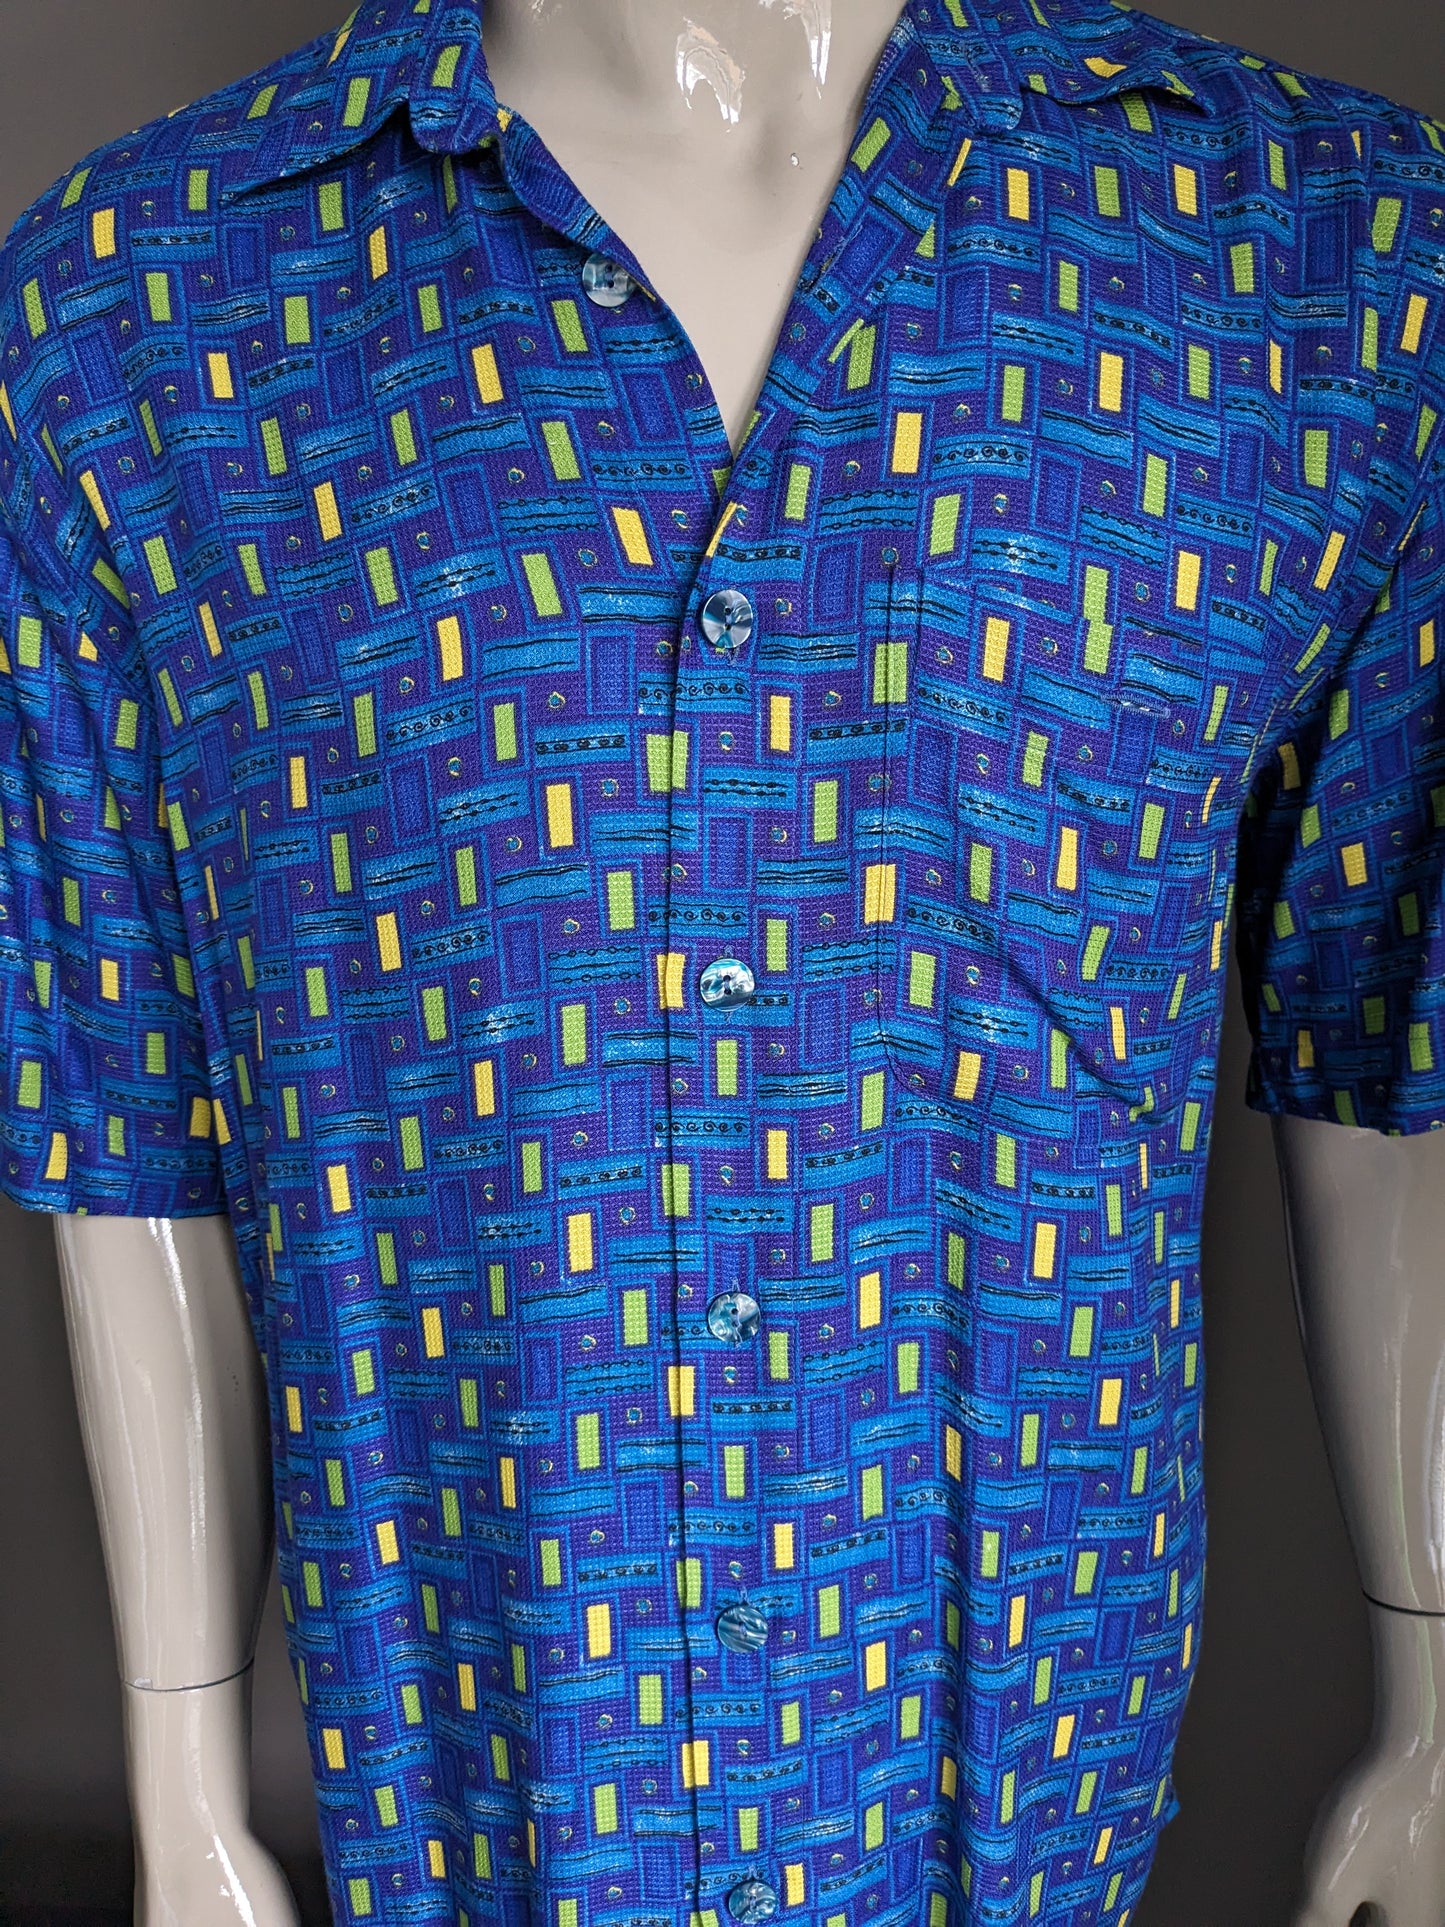 Vintage de la camisa benetti de los 90 manga corta. Botones más grandes. Estampado amarillo verde azulado. Talla L.